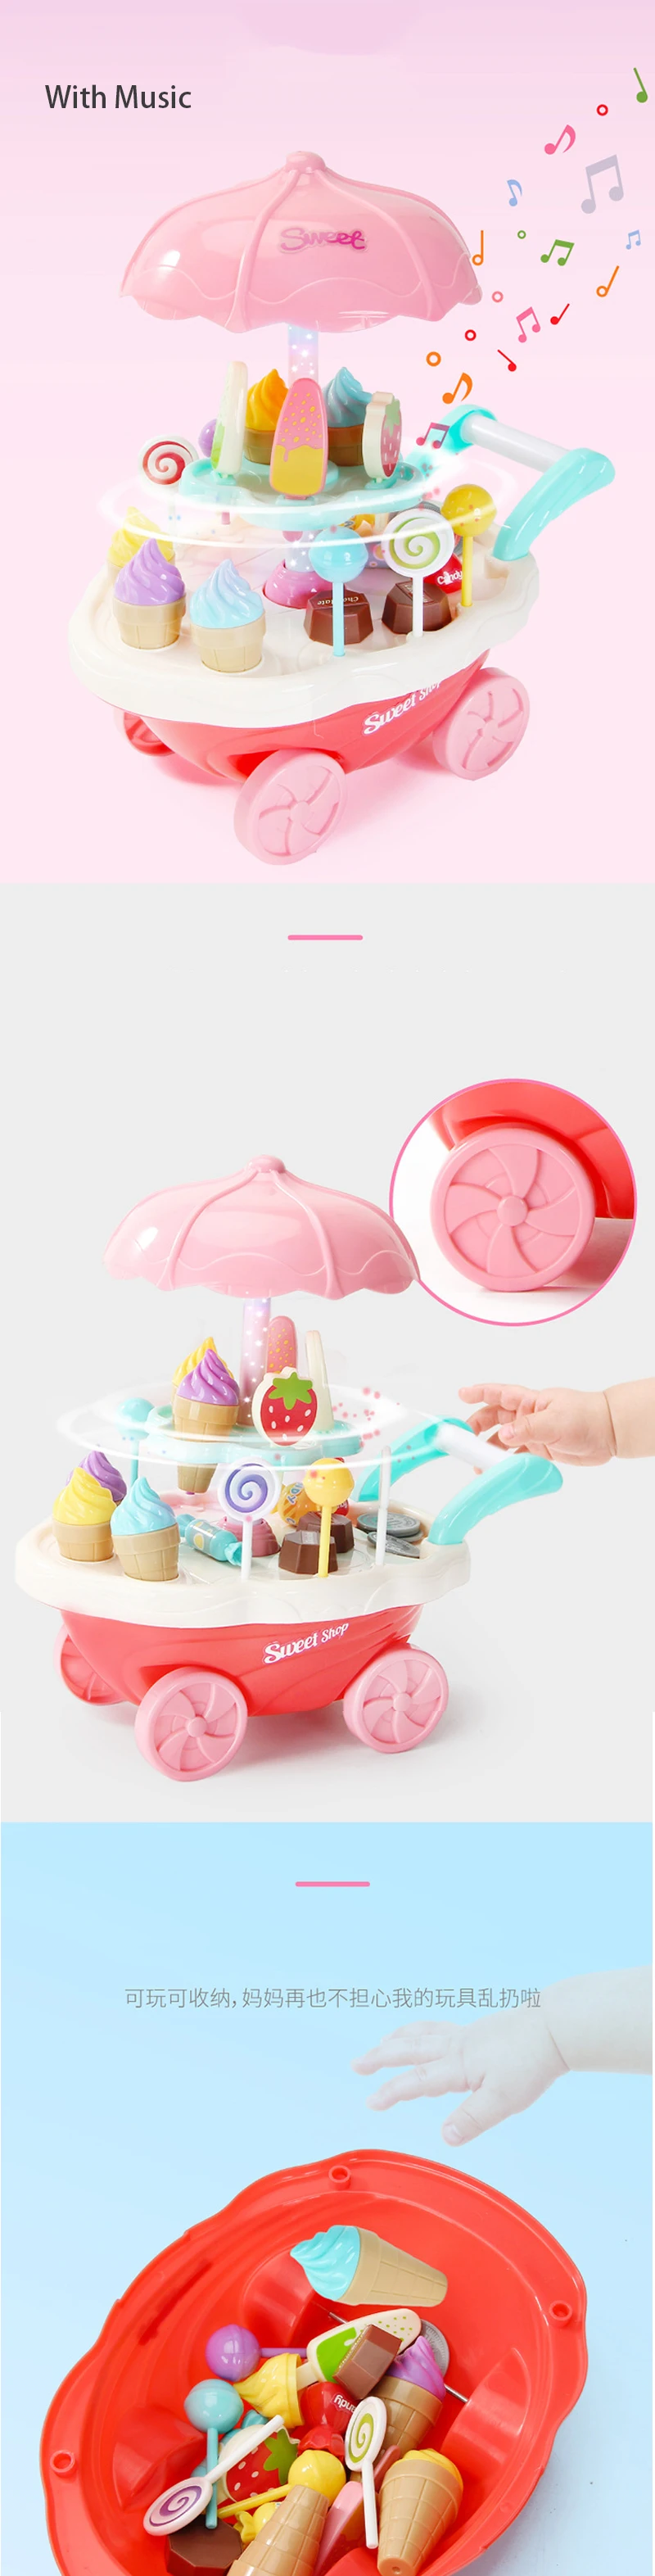 Новые Горячие 4 типа 1 шт. мини конфеты корзину маленькое Мороженое магазин супермаркет детские игрушки Кухонная Тележка детские игрушки